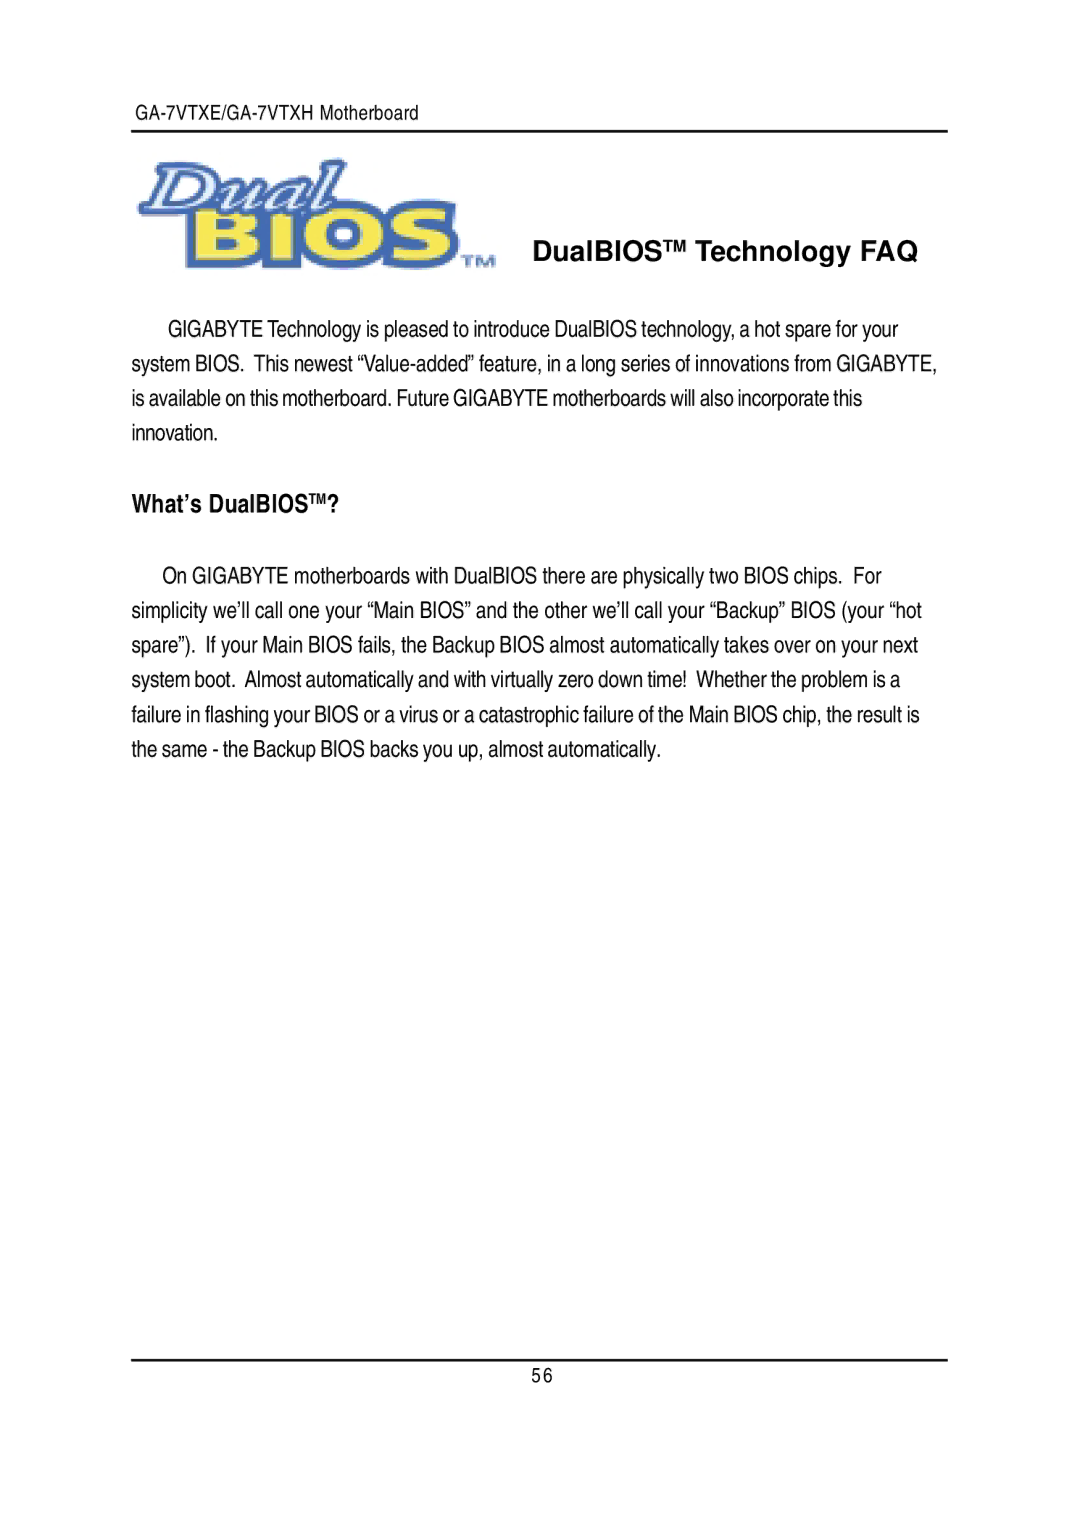 Gigabyte GA-7VTXE, GA-7VTXH warranty DualBIOSTM Technology FAQ, What’s DualBIOSTM? 